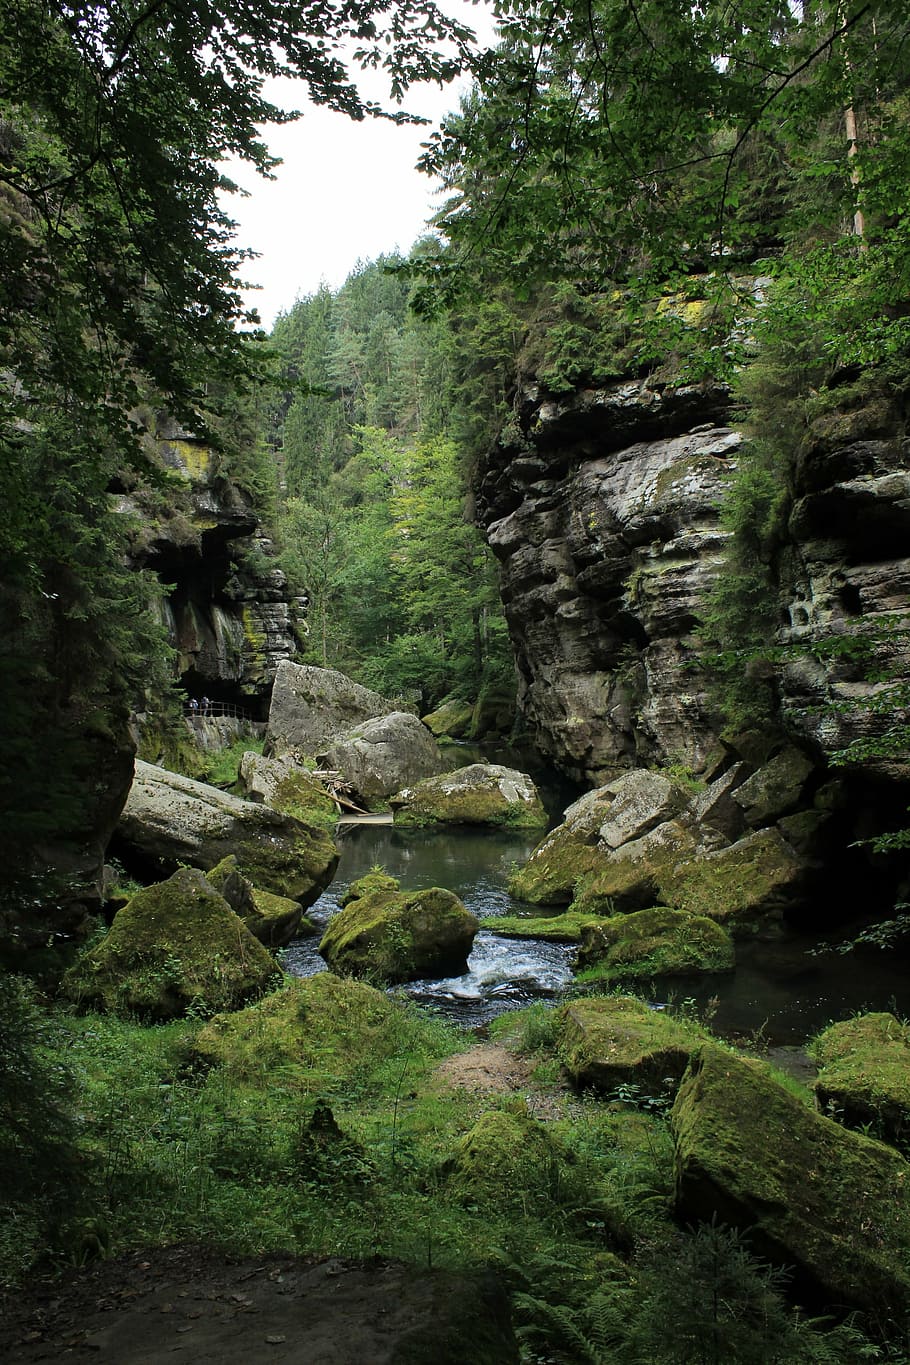 hřensko, rocks, czech switzerland, river, gorges, water, stone, plant, tree, growth